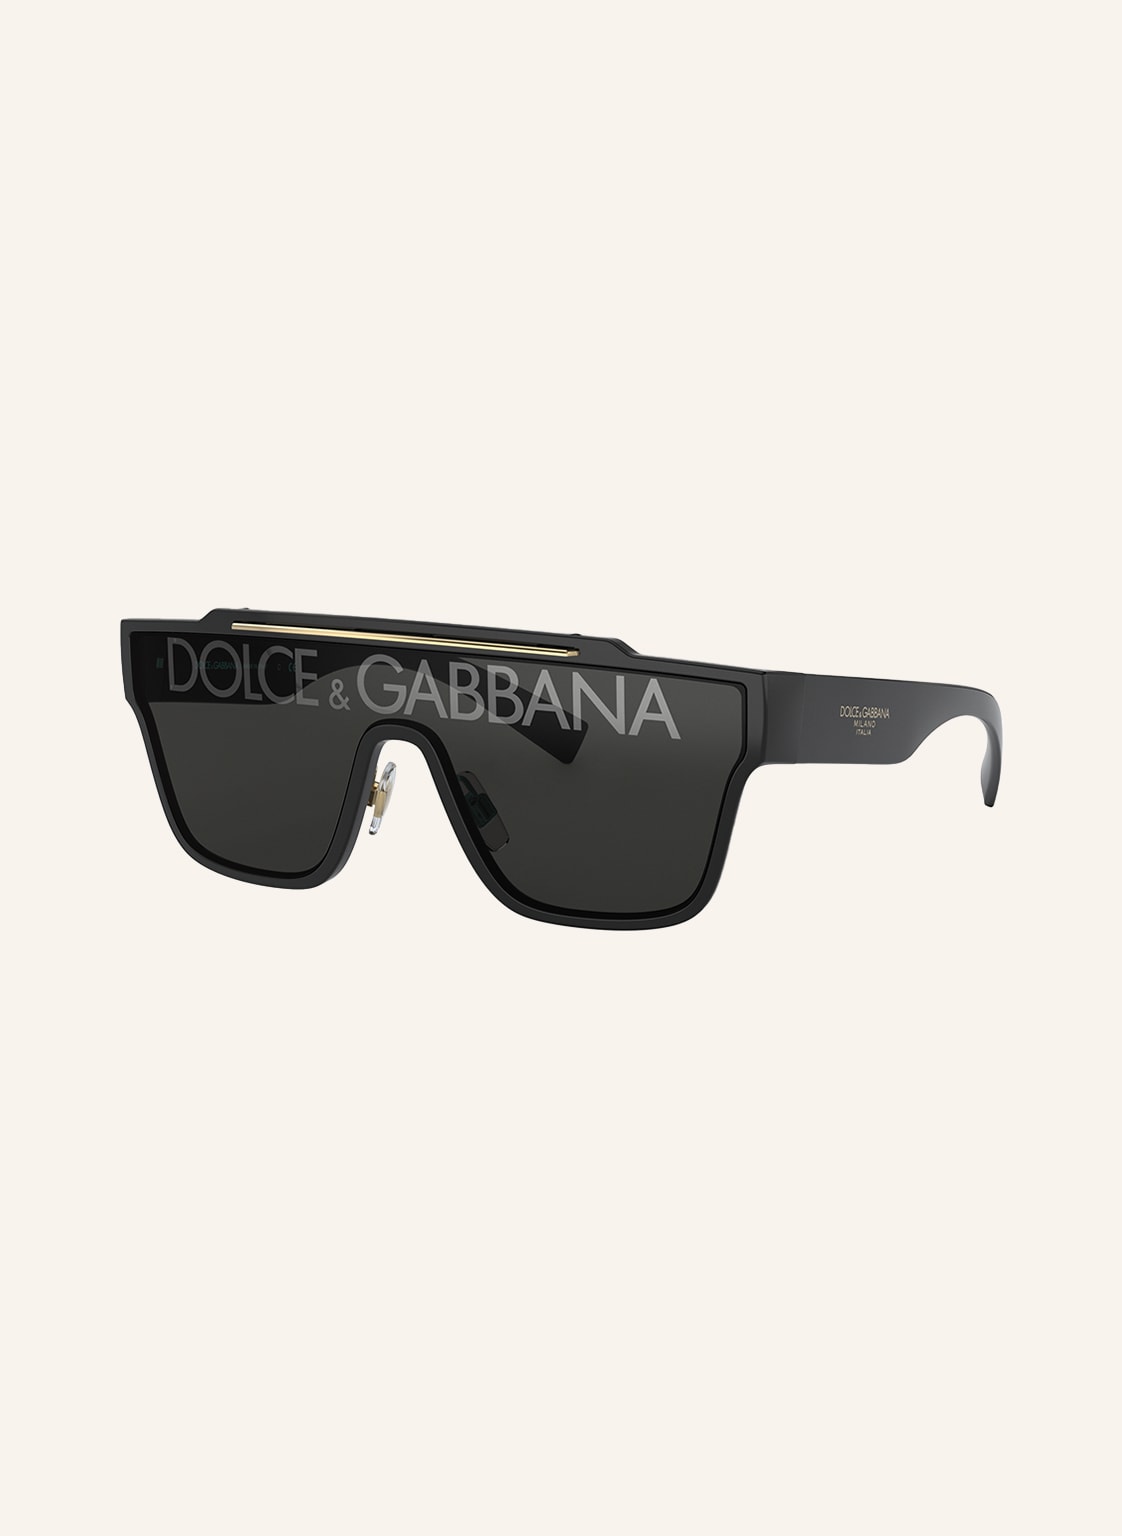 Dolce & Gabbana Sonnenbrille dg6125 schwarz von Dolce & Gabbana